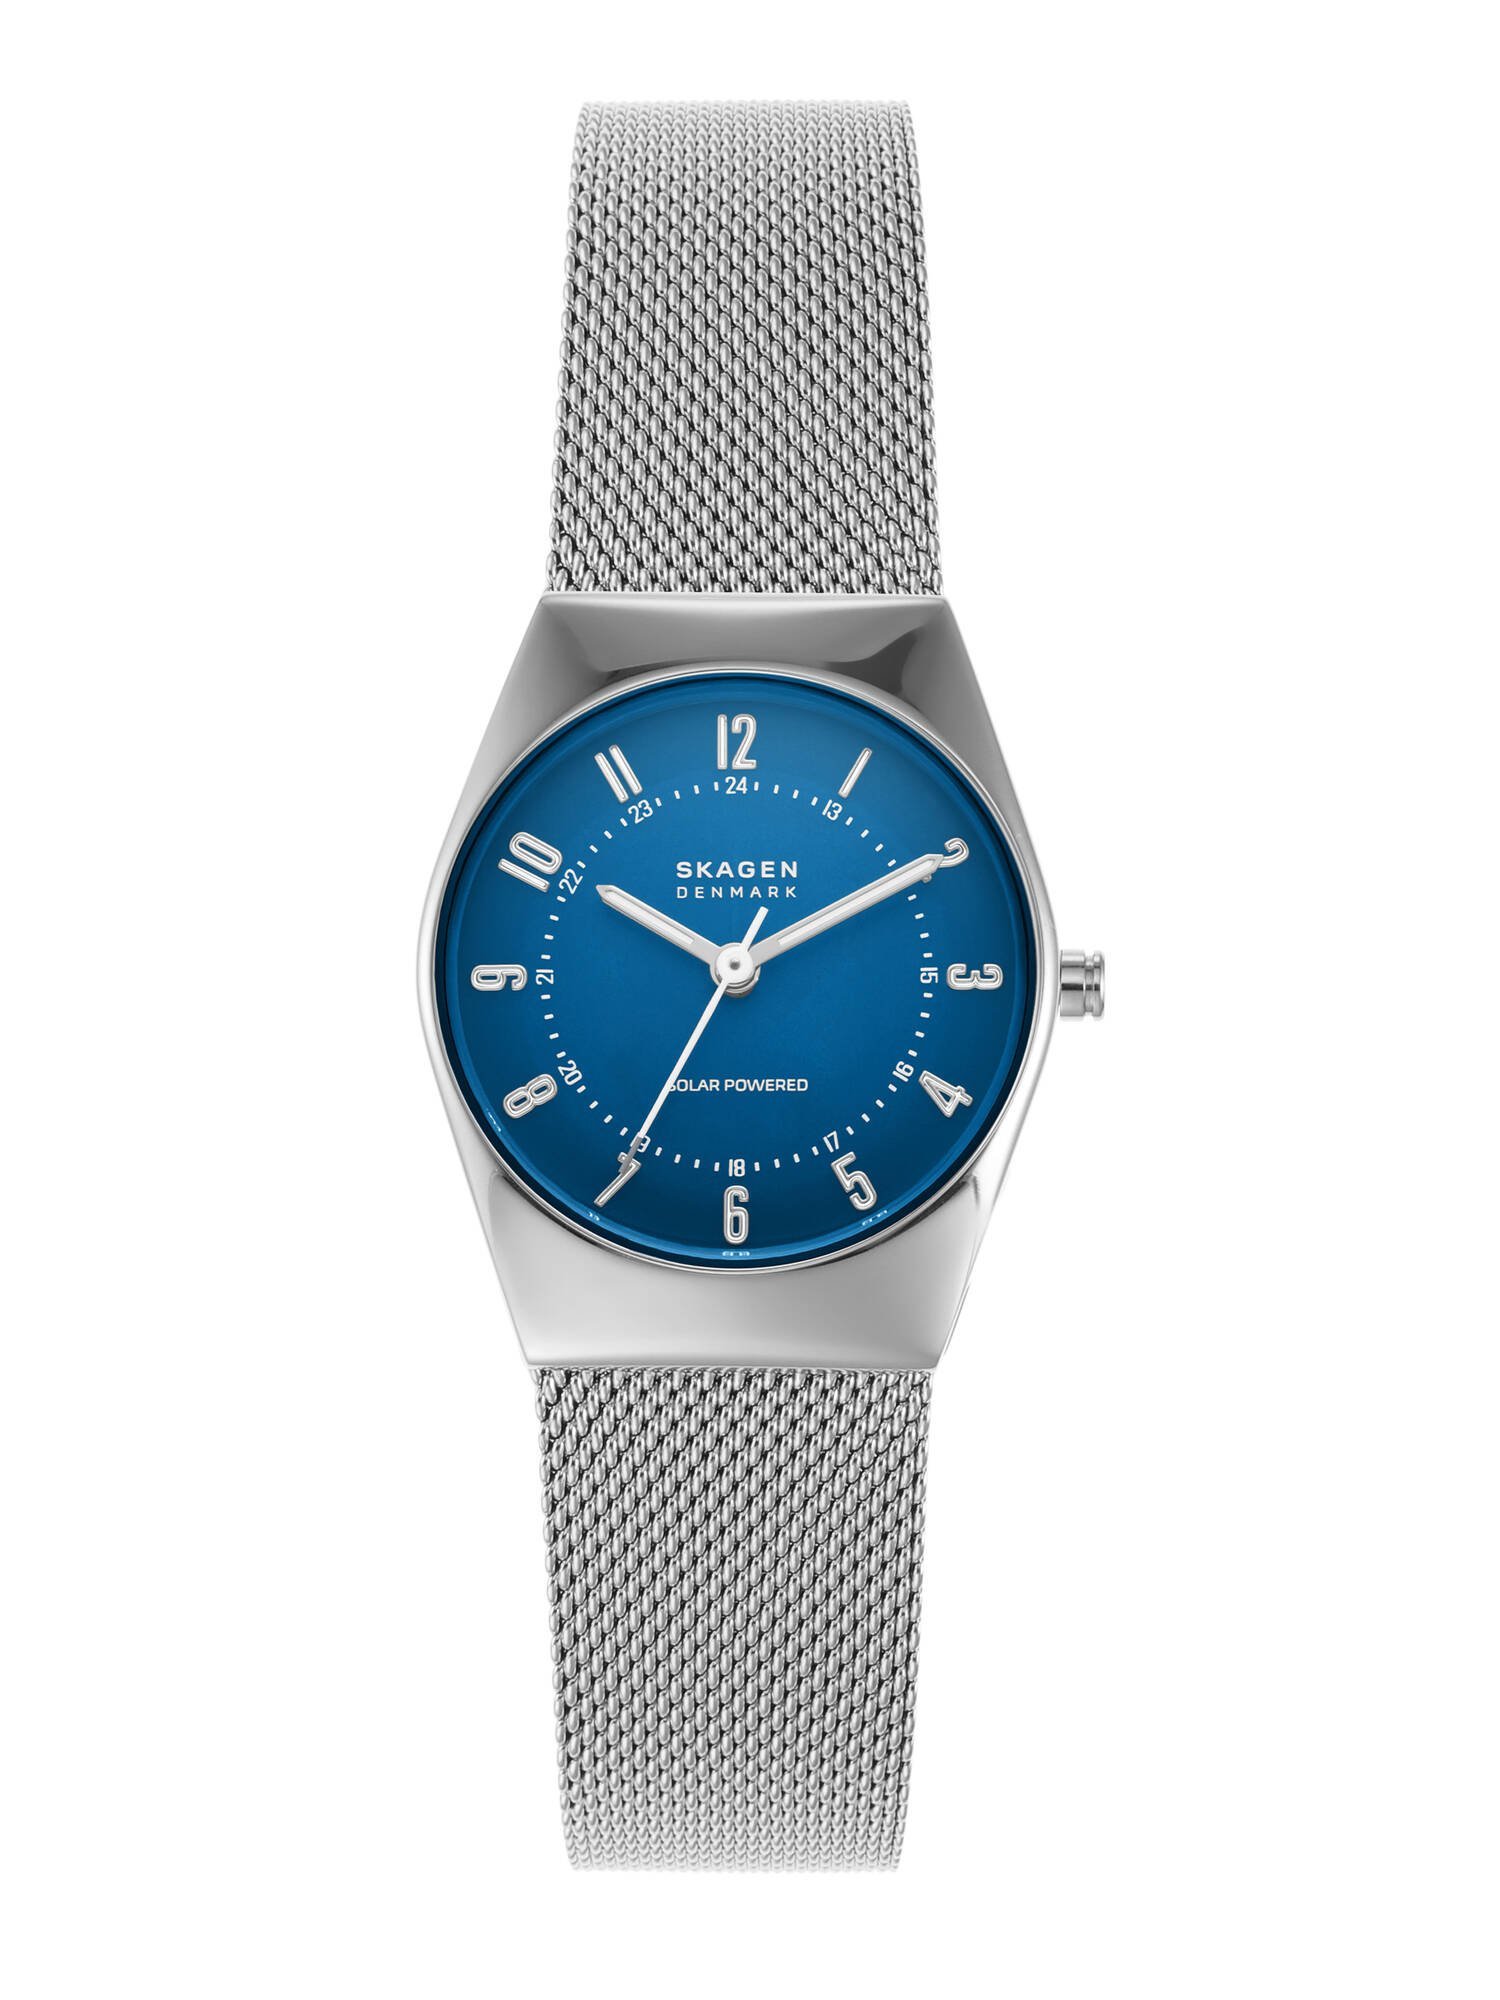 スカーゲン SKAGEN Grenen Lille SKW3080 スカーゲン アクセサリー・腕時計 腕時計 シルバー【送料無料】